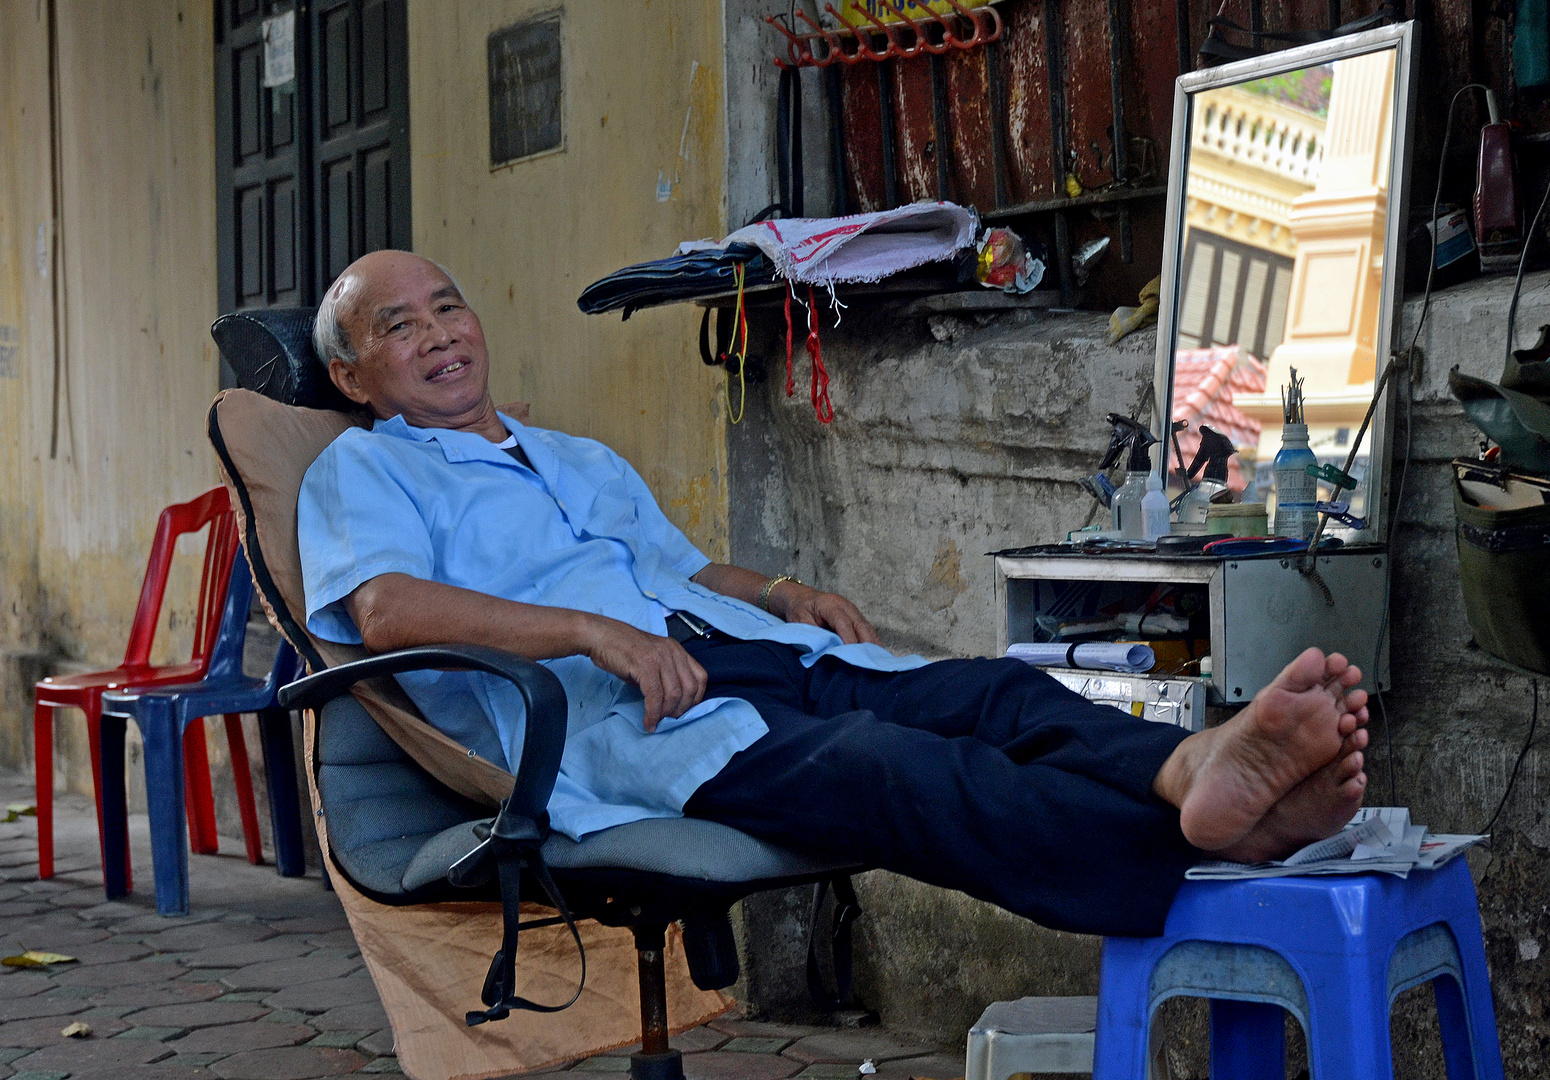 Hanoi - Street hair stylist on break